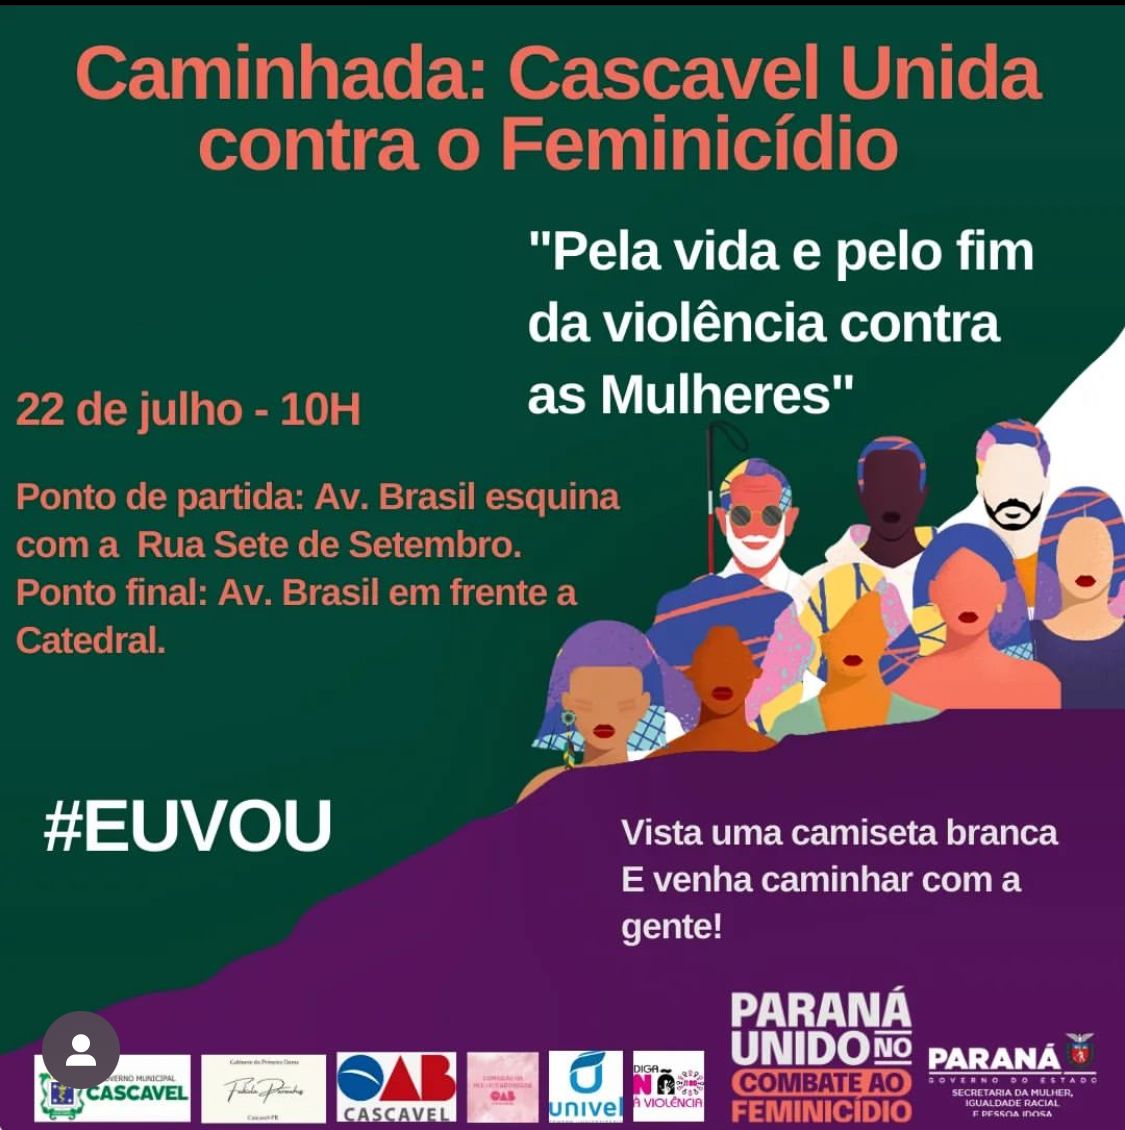 OAB Cascavel participa da caminhada “Cascavel Unida contra o Feminicídio”